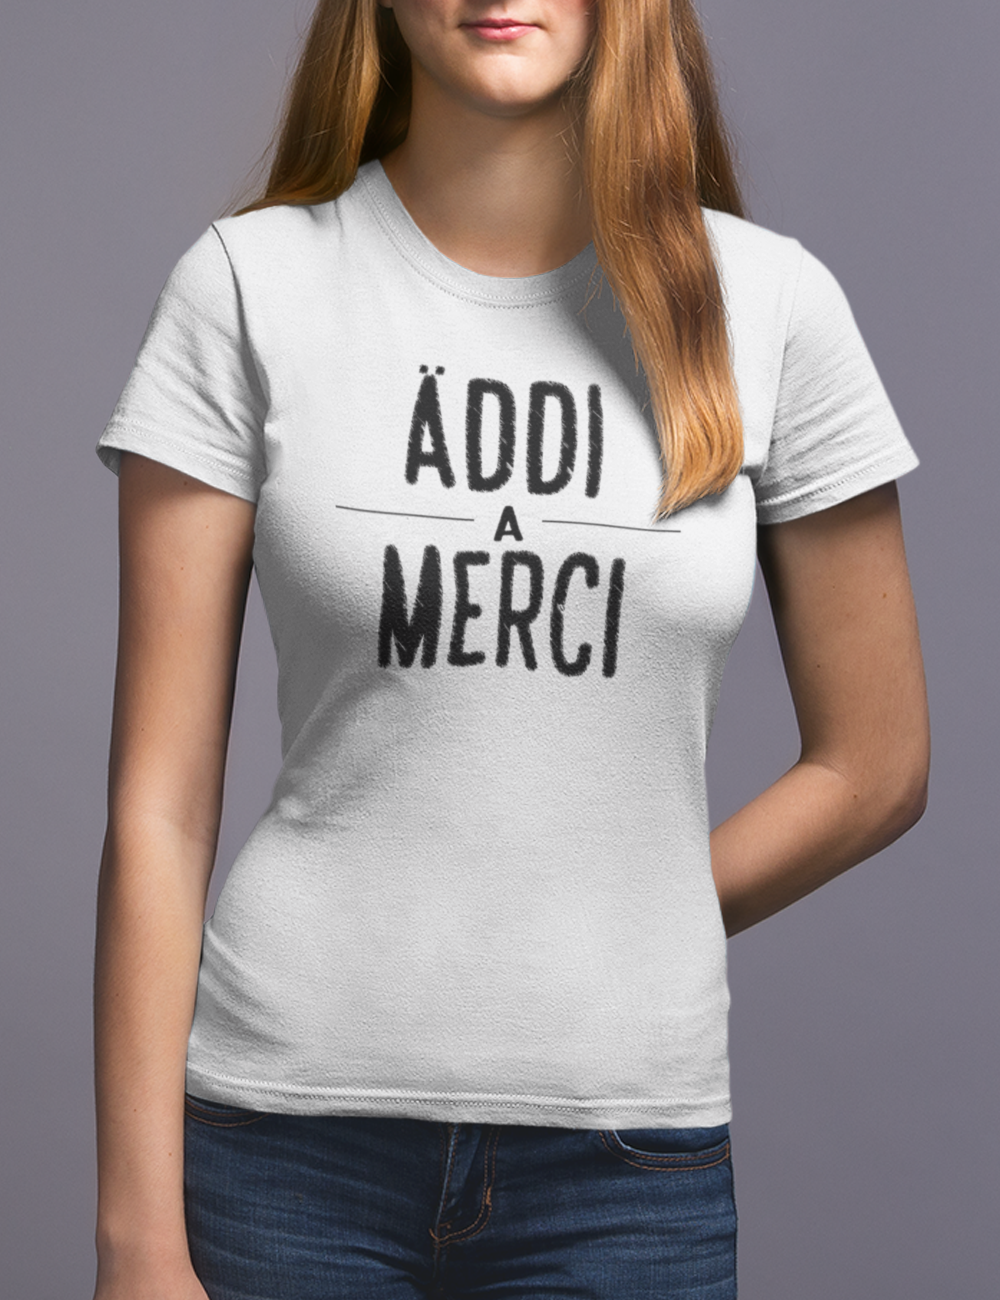 Äddi a Merci - light  - Damen Premiumshirt